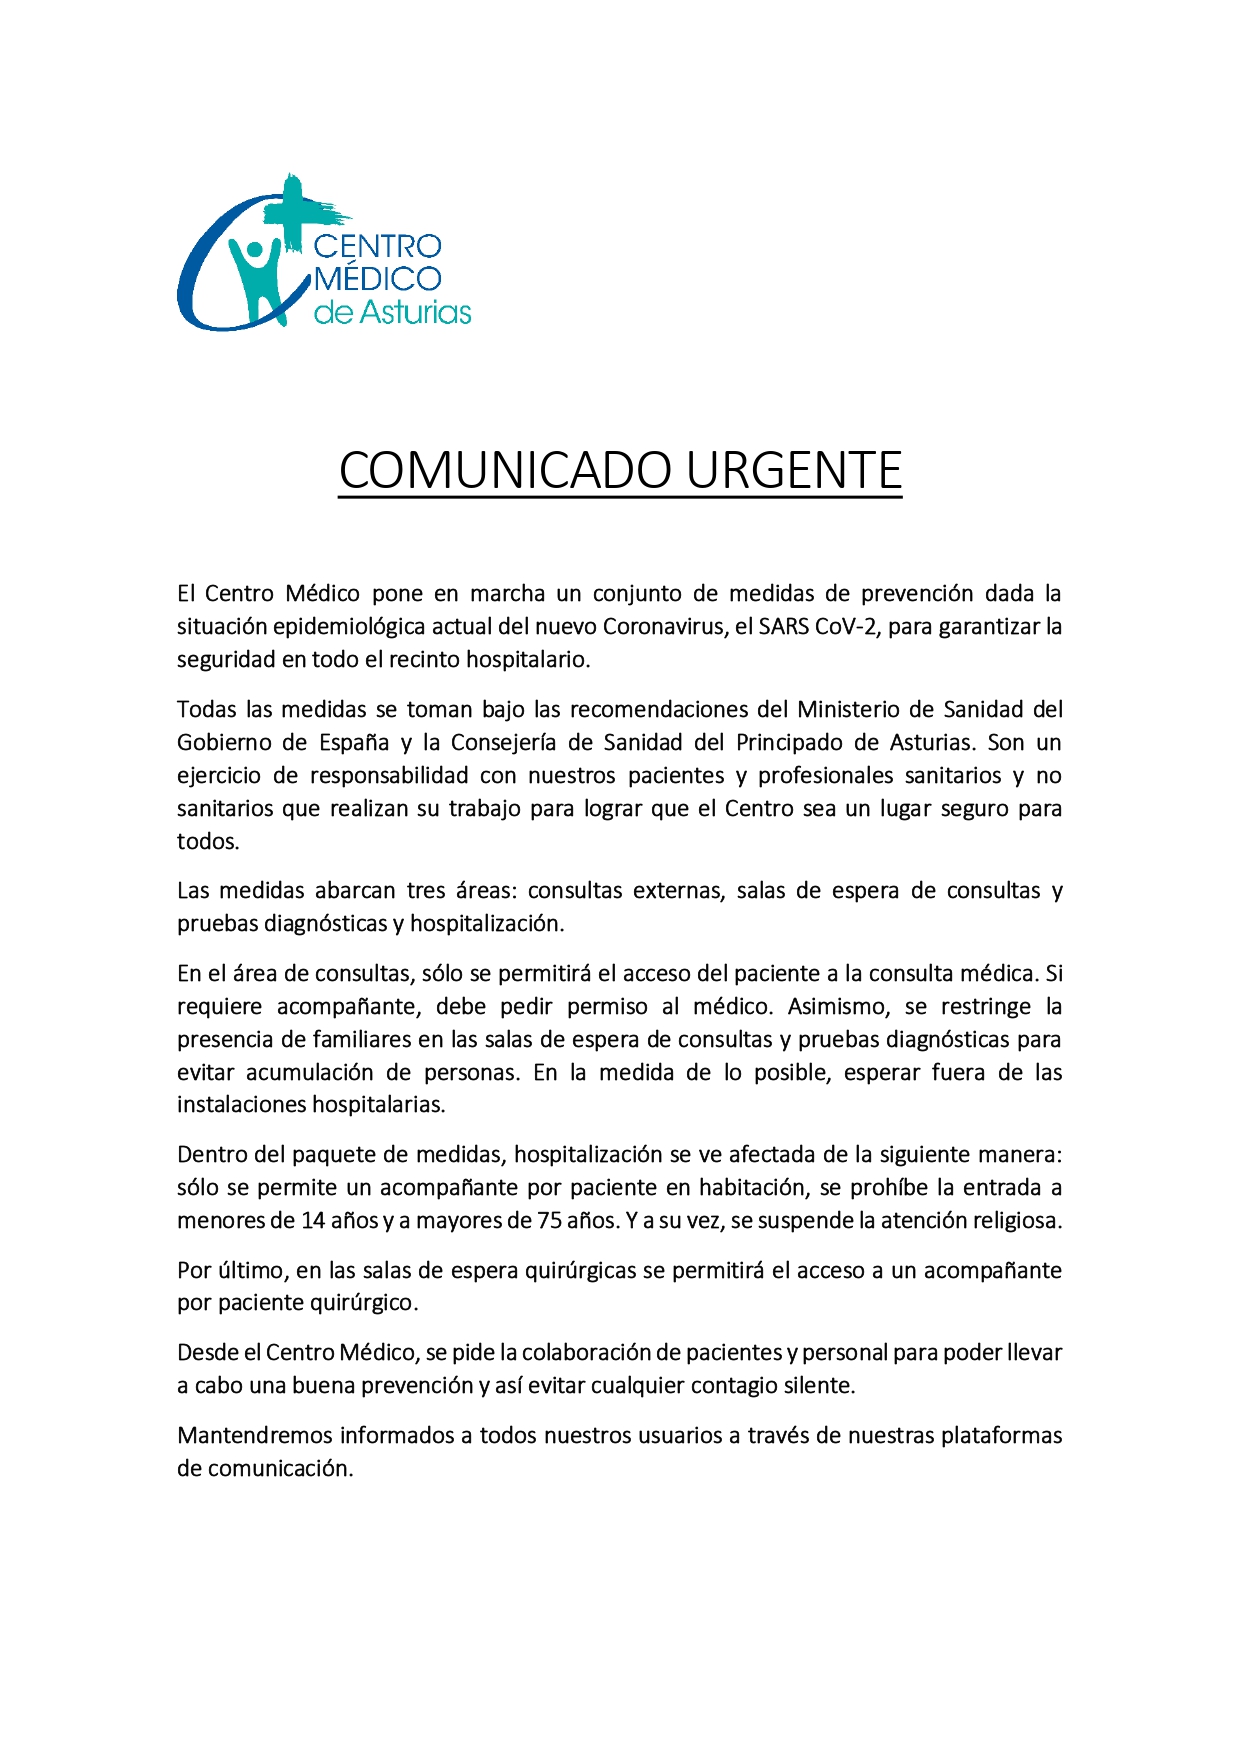 El Centro Médico de Asturias toma medidas para garantizar la seguridad en todo el recinto hospitalario